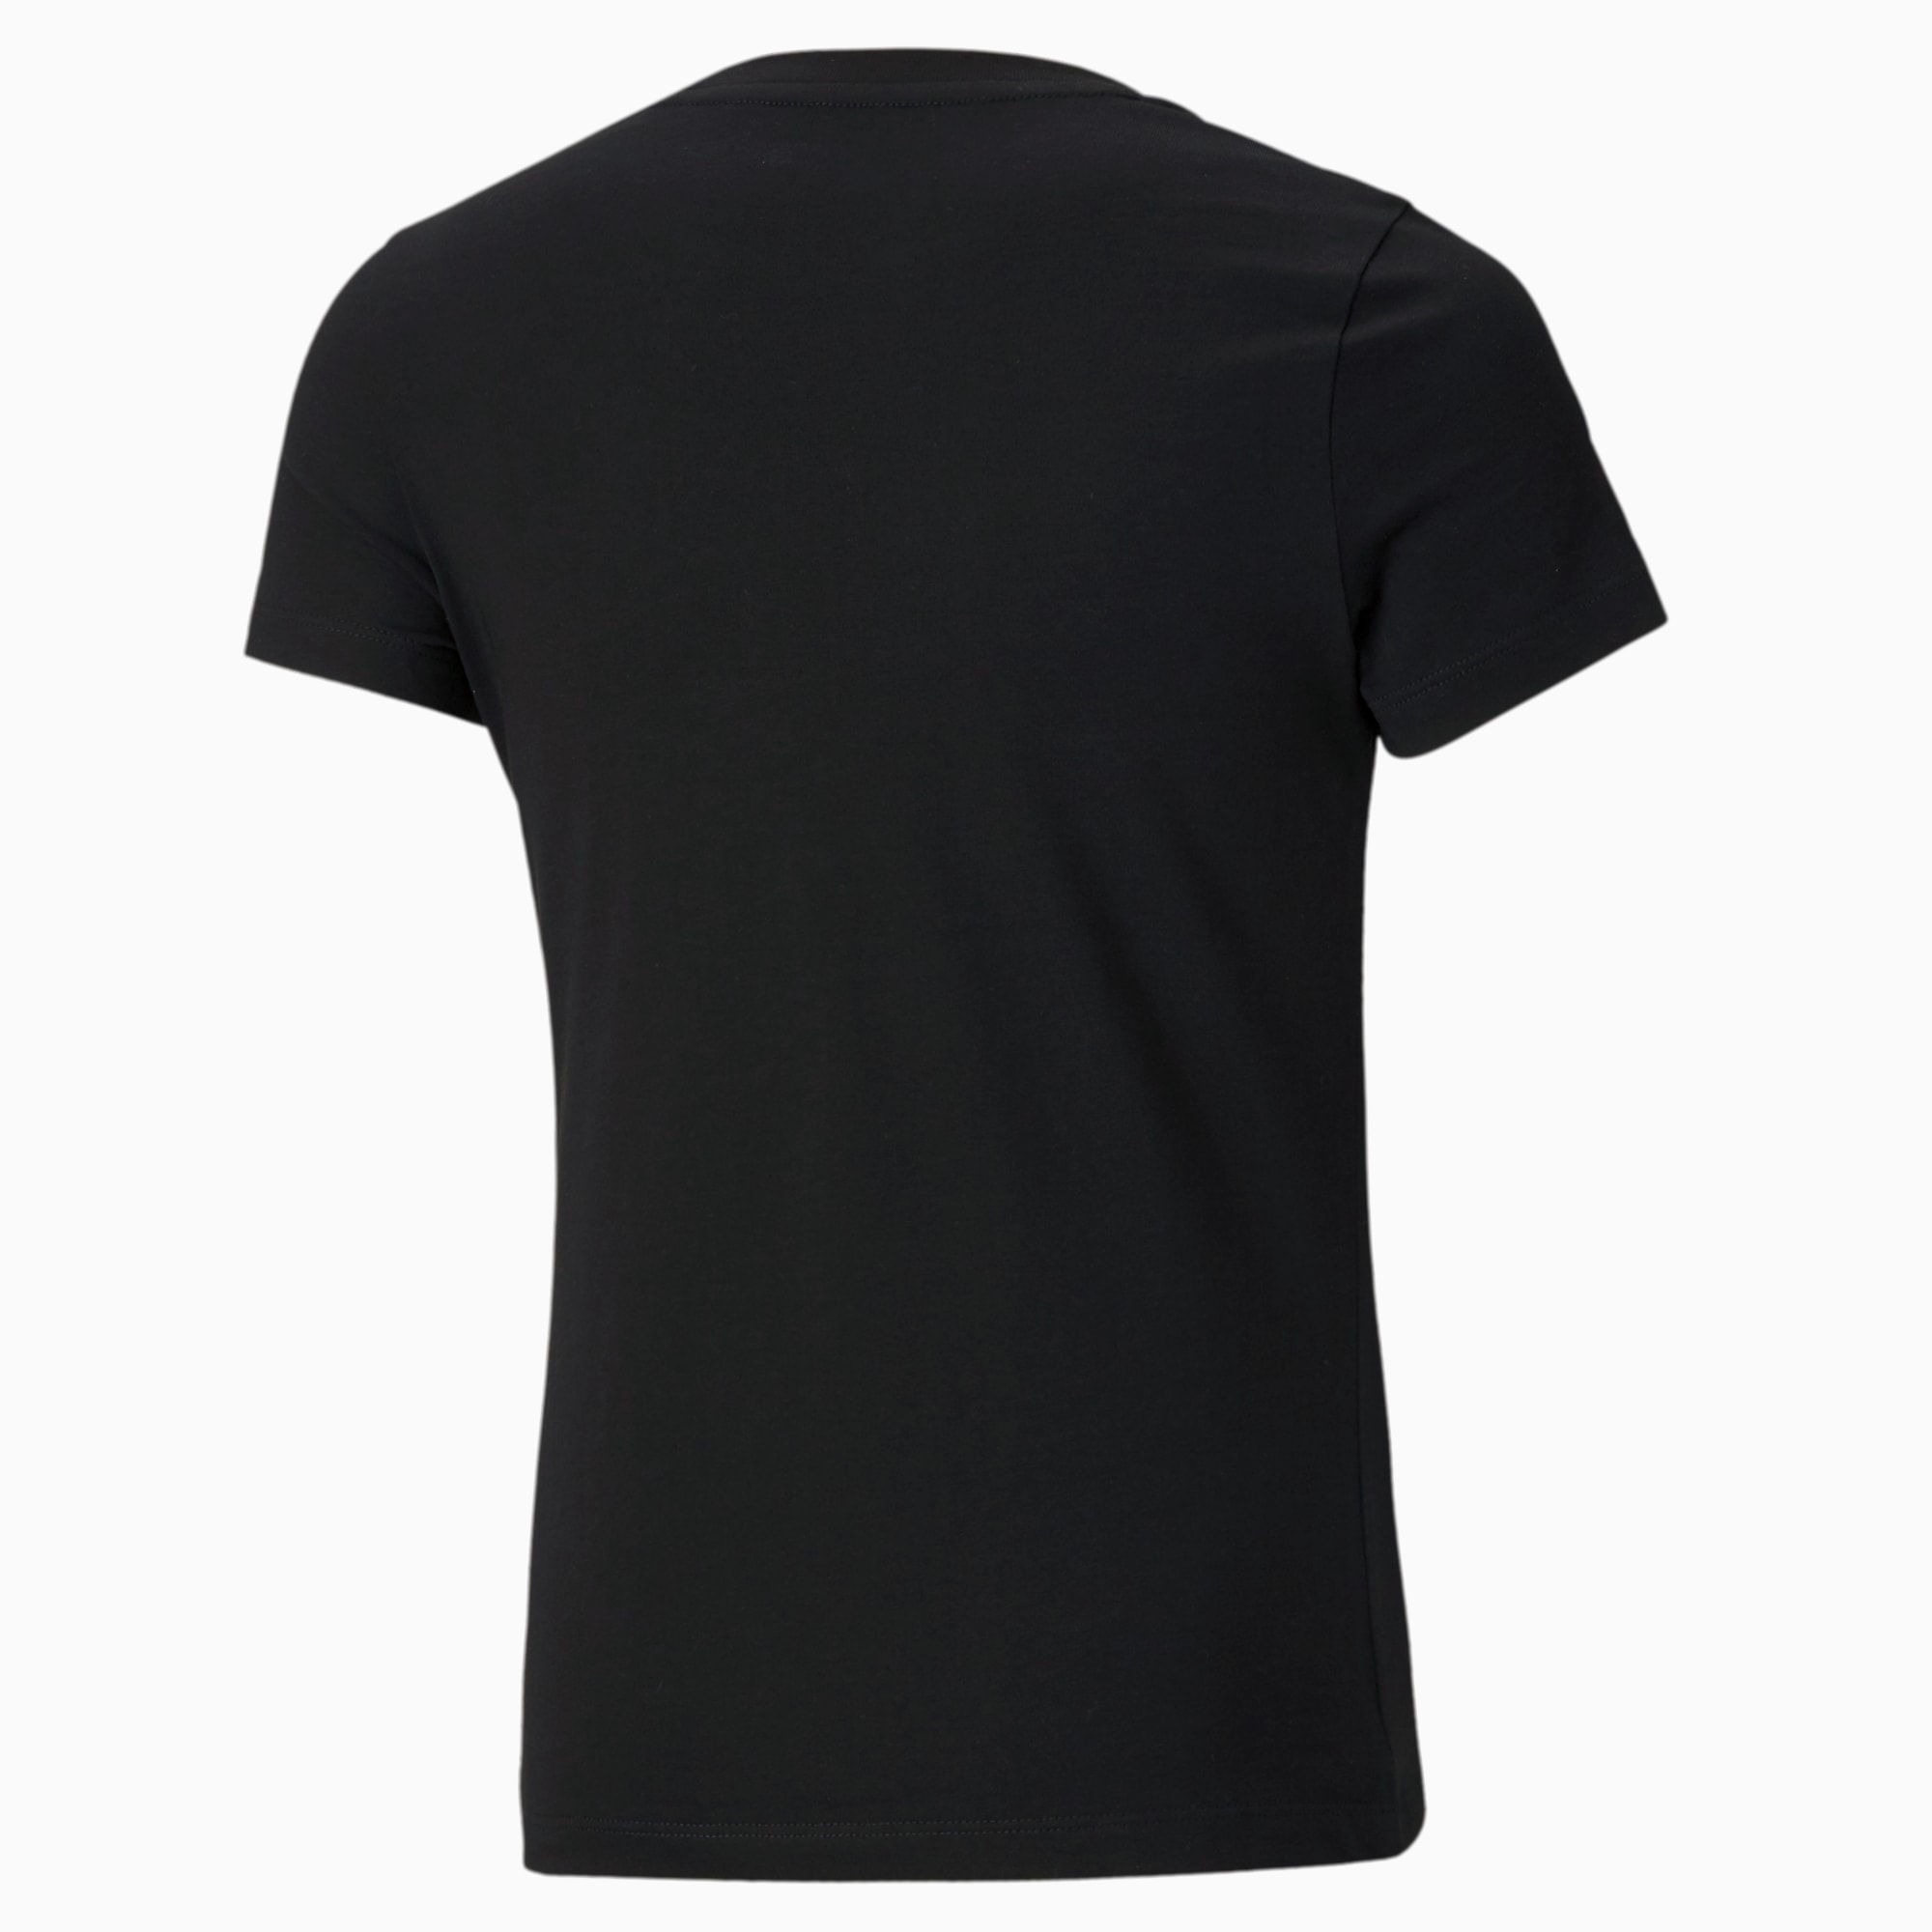 PUMA Classics Logo Jugend T-Shirt Für Kinder, Schwarz, Größe: 104, Kleidung